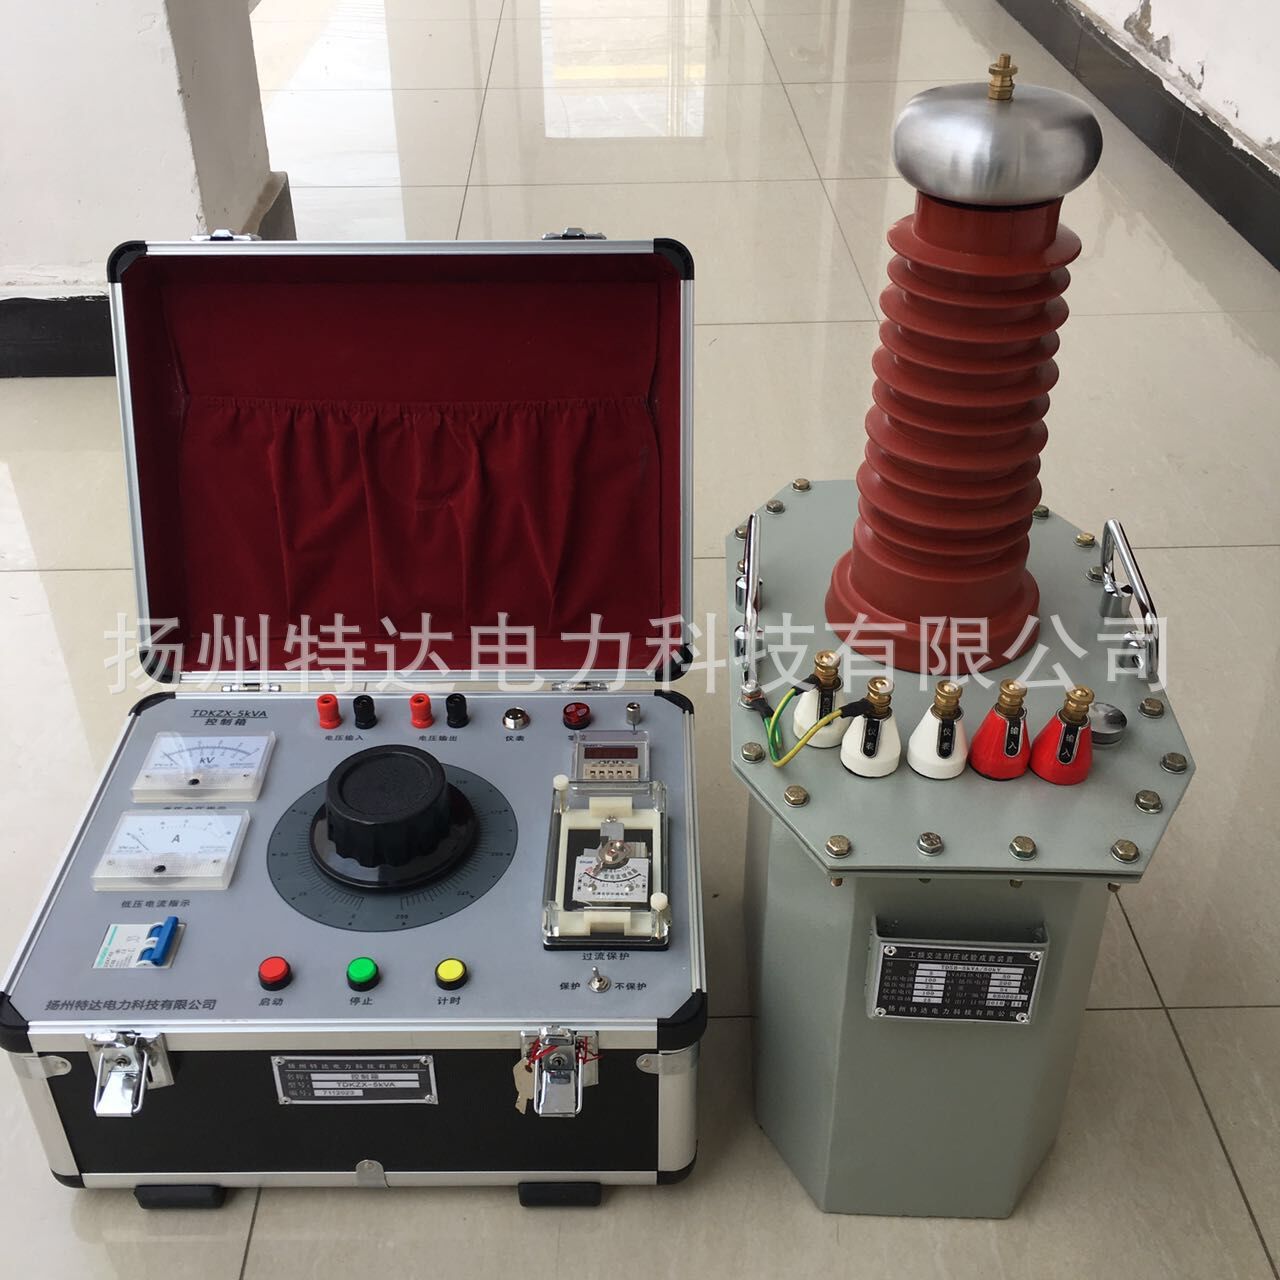 扬州特达电力厂家供应油侵式试验变压器5KVA/50KV 工频试验变压器